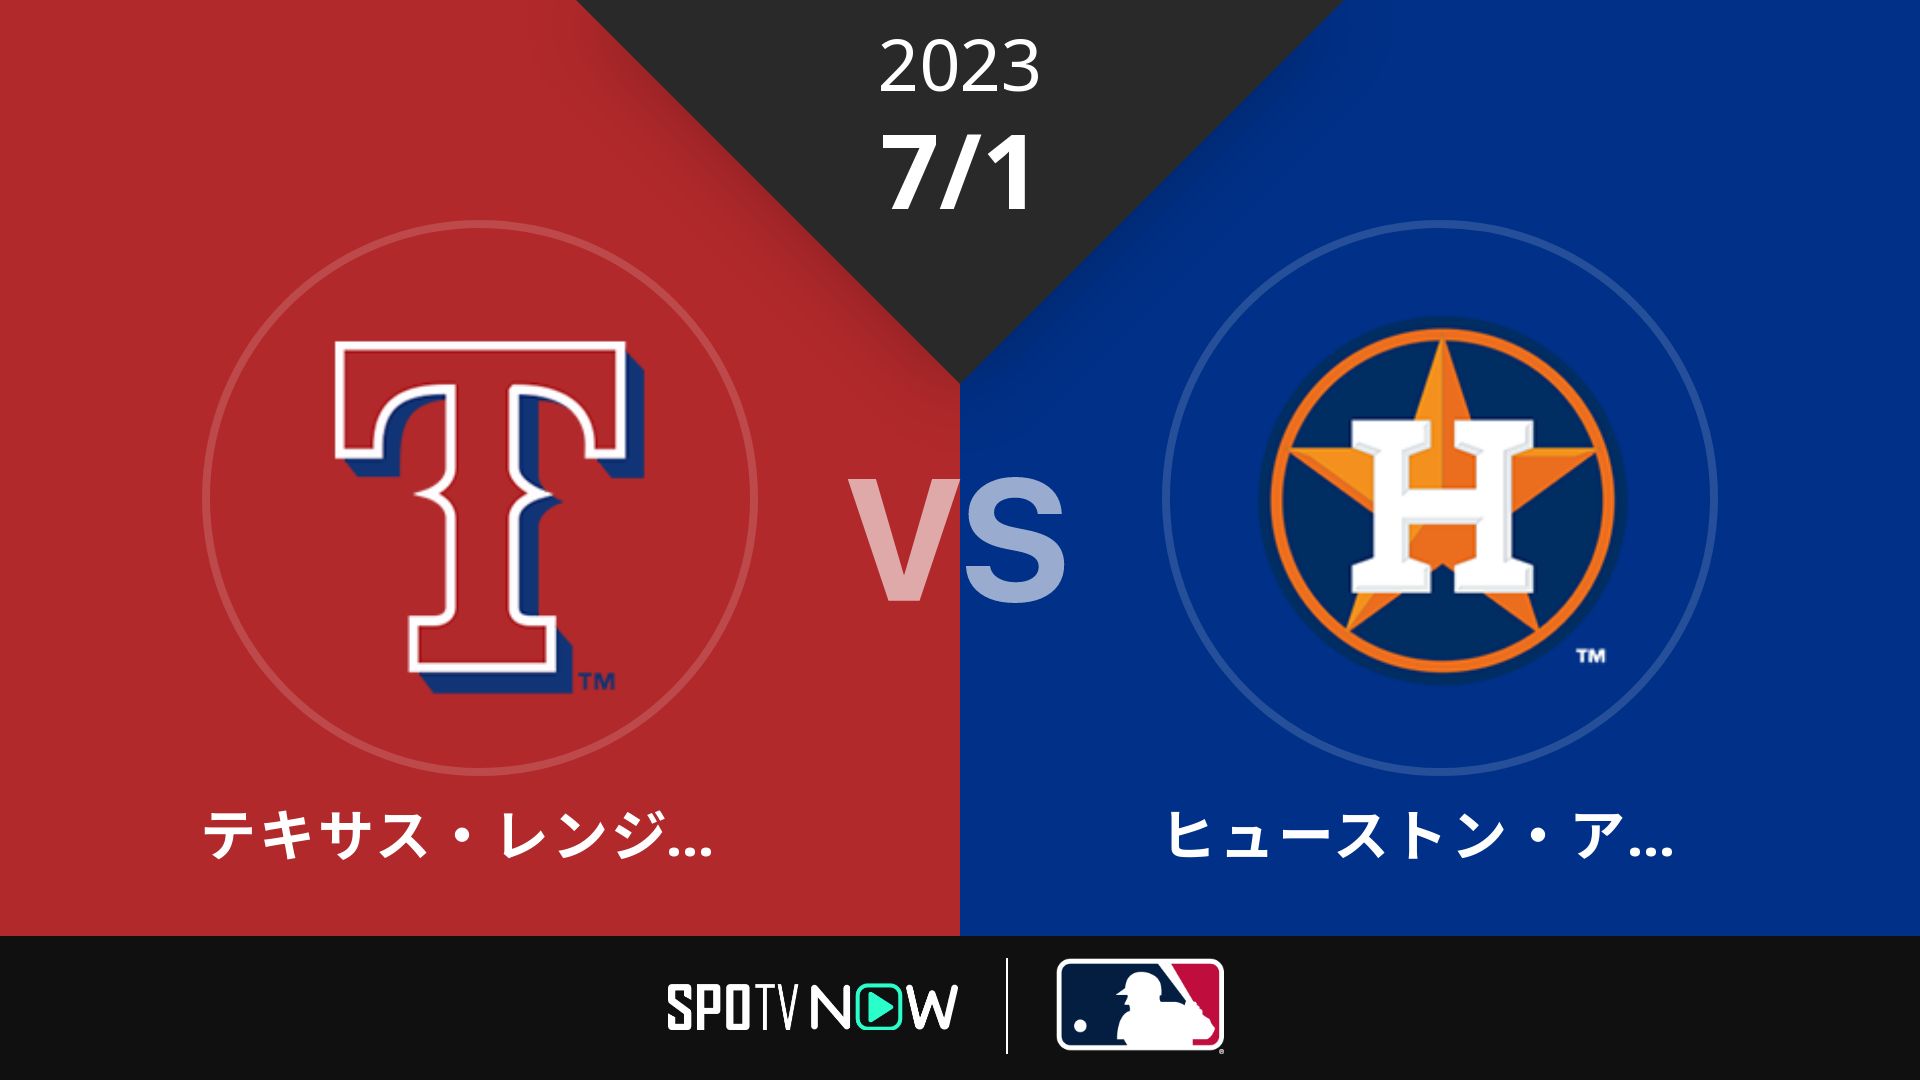 2023/7/1 レンジャーズ vs アストロズ [MLB]